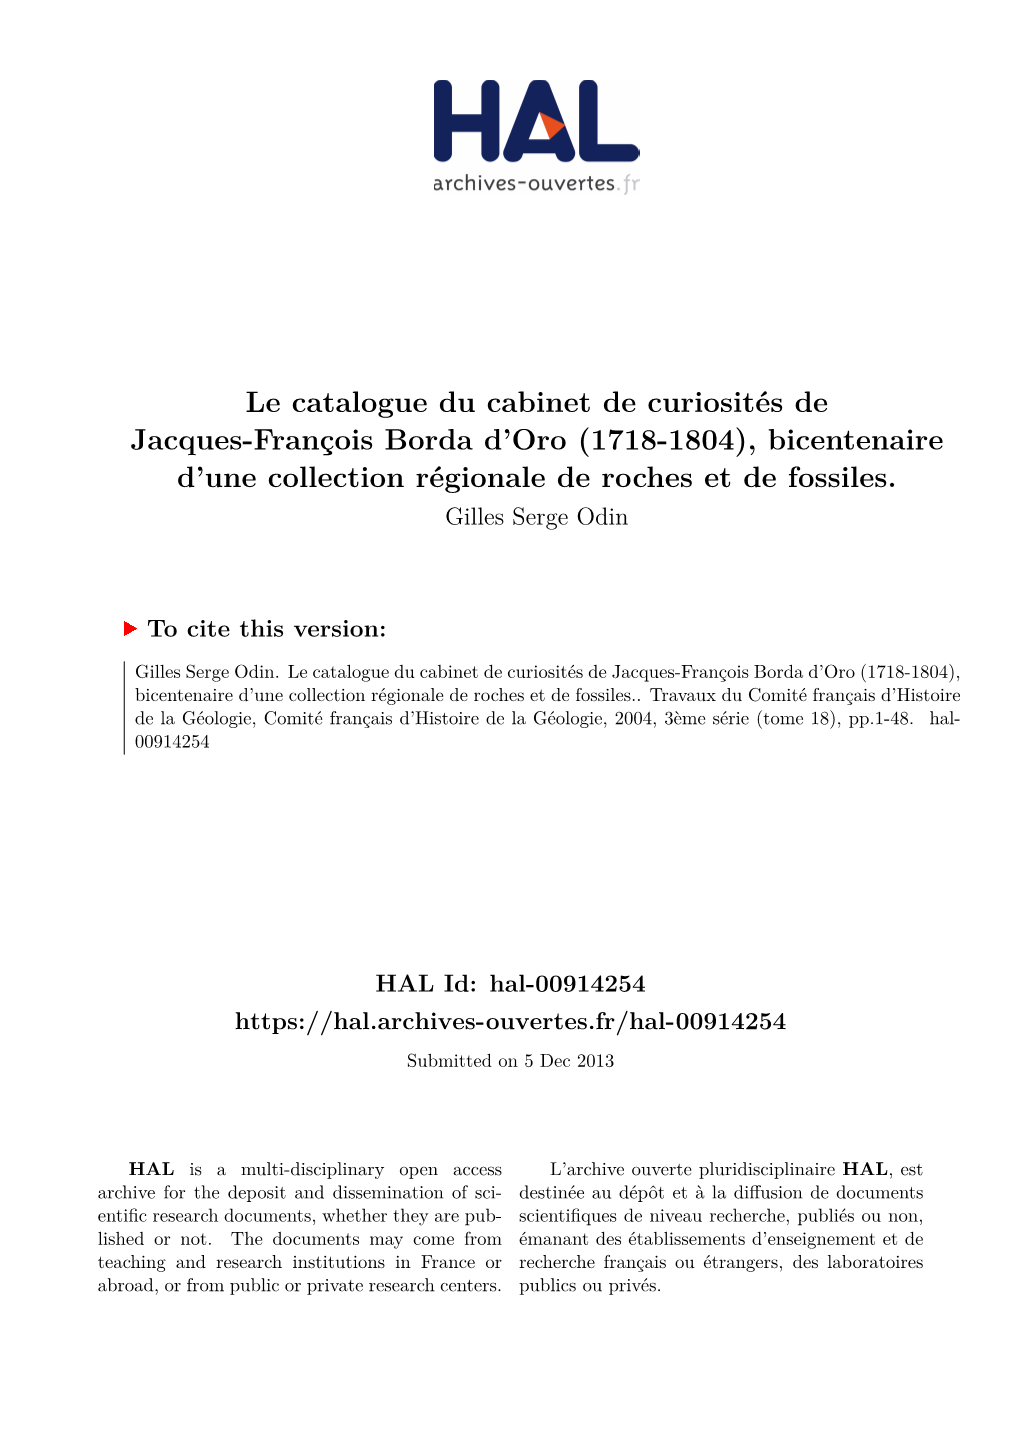 Le Catalogue Du Cabinet De Curiosités De Jacques-François Borda D'oro (1718-1804), Bicentenaire D'une Collection Régionale De Roches Et De Fossiles